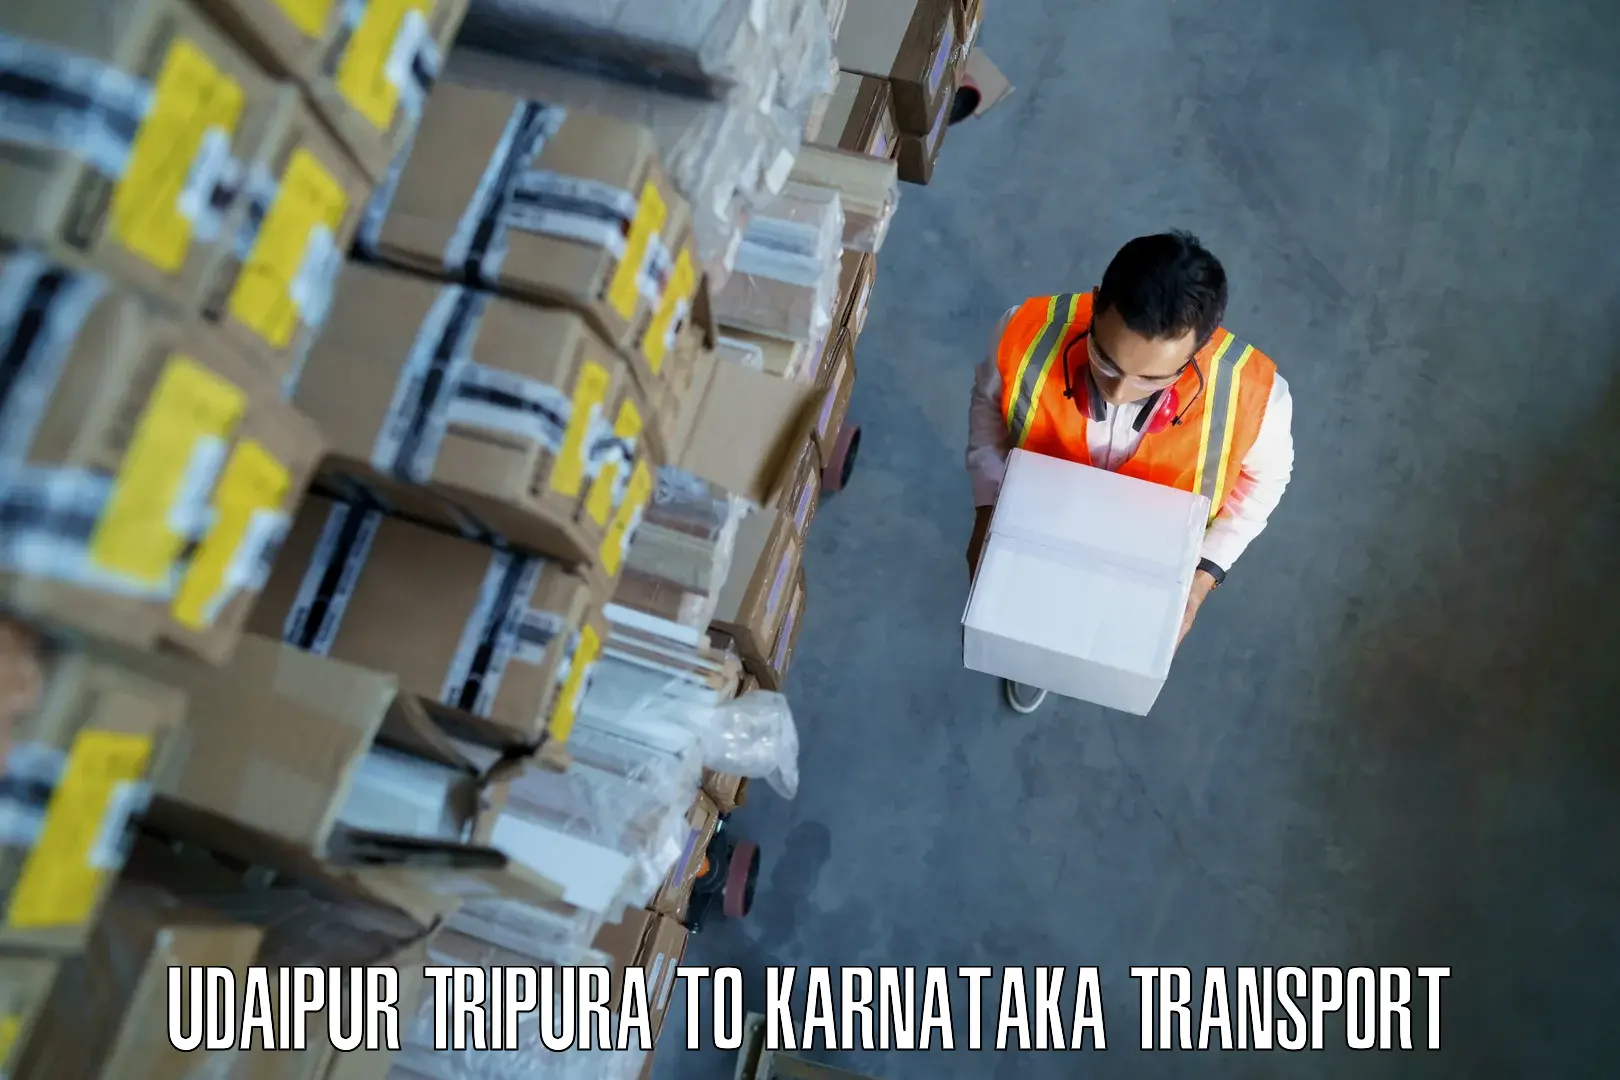 Truck transport companies in India Udaipur Tripura to Basavakalyan